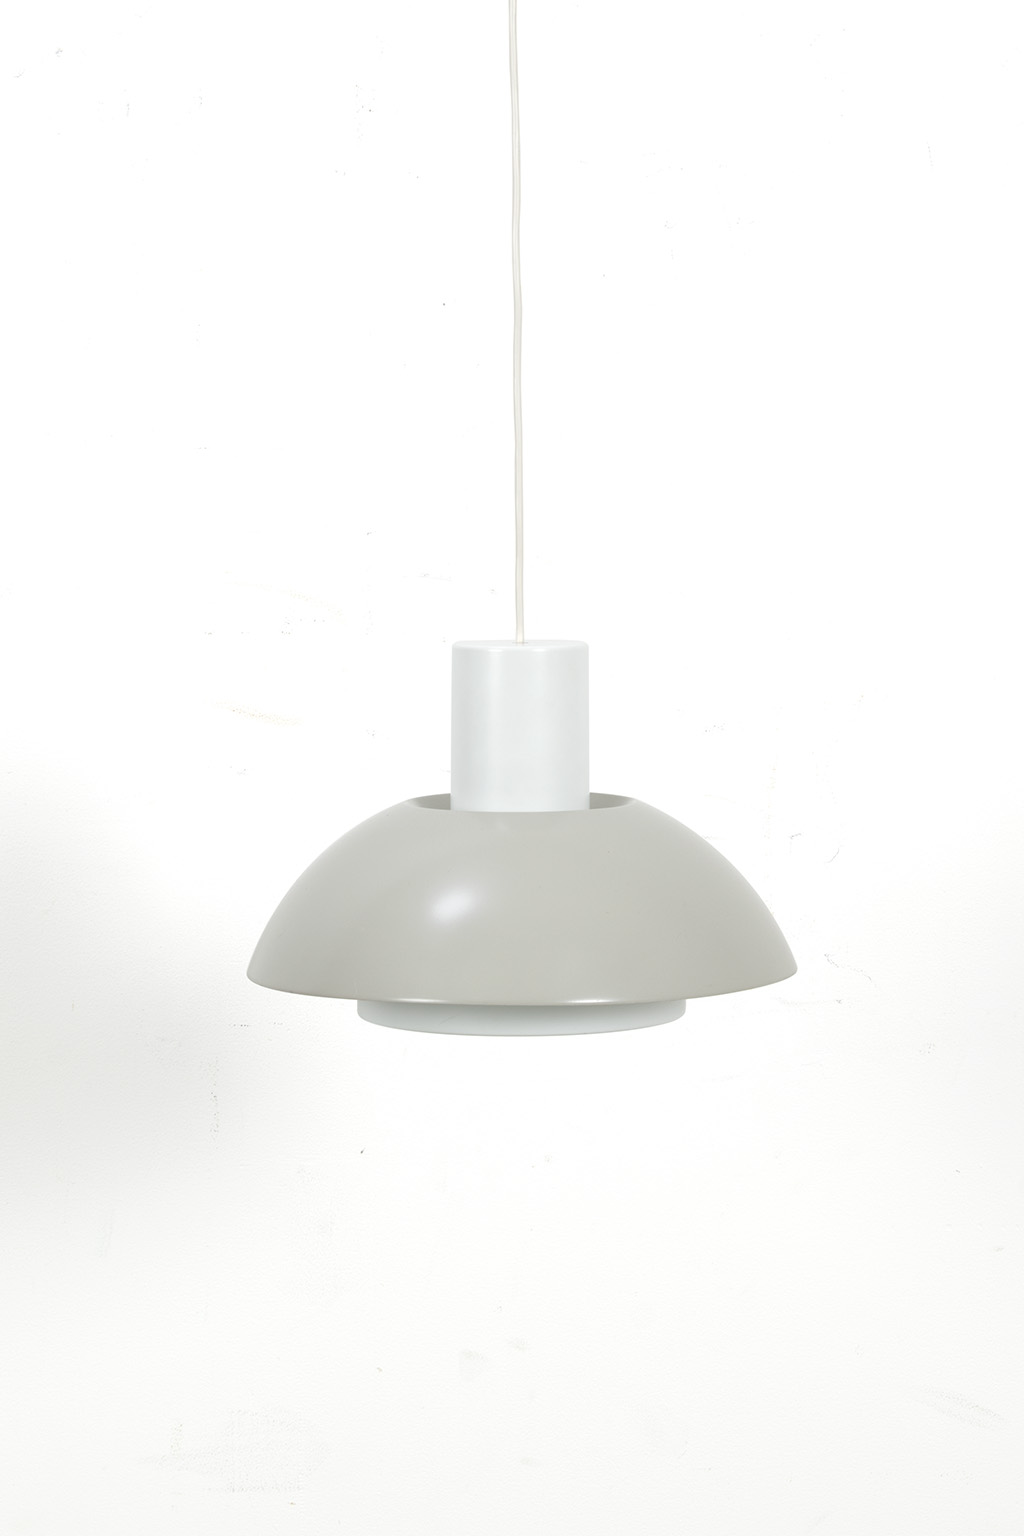 Fog & Mørup ‘Lakaj’ hanging lamp